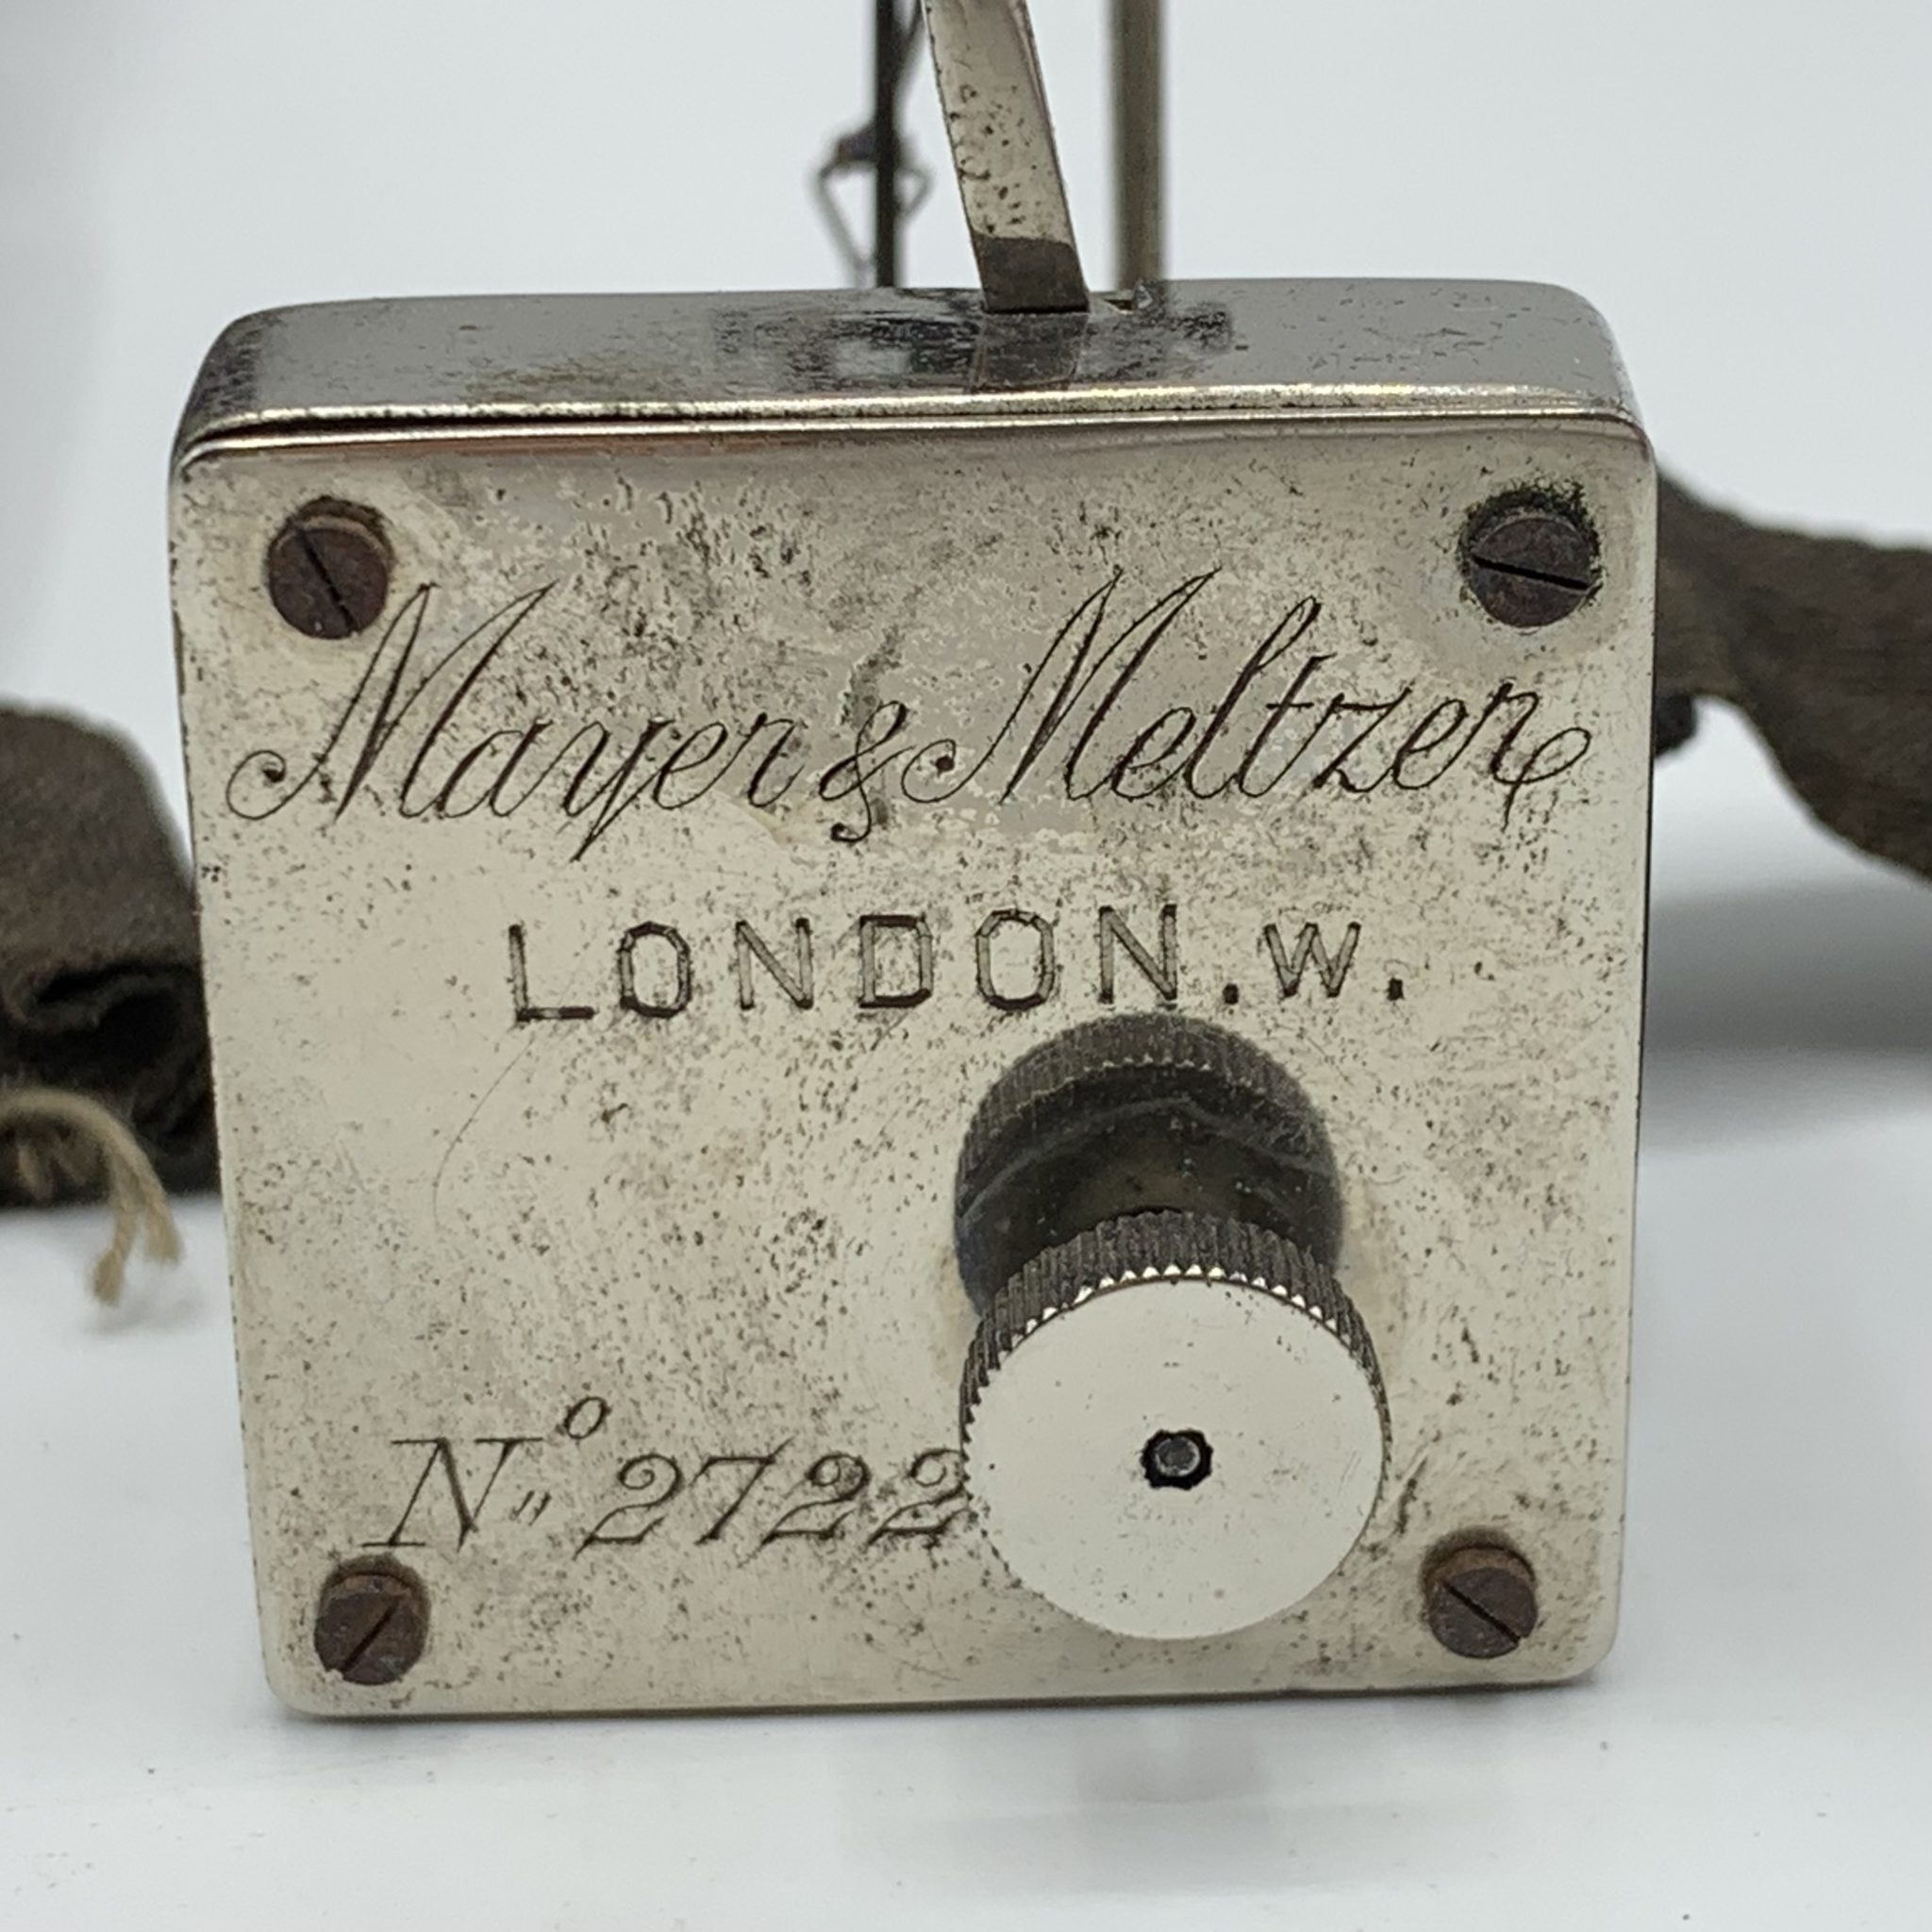 An antique Dudgeons’ sphygmograph by “Mayer & Meltzen – London”